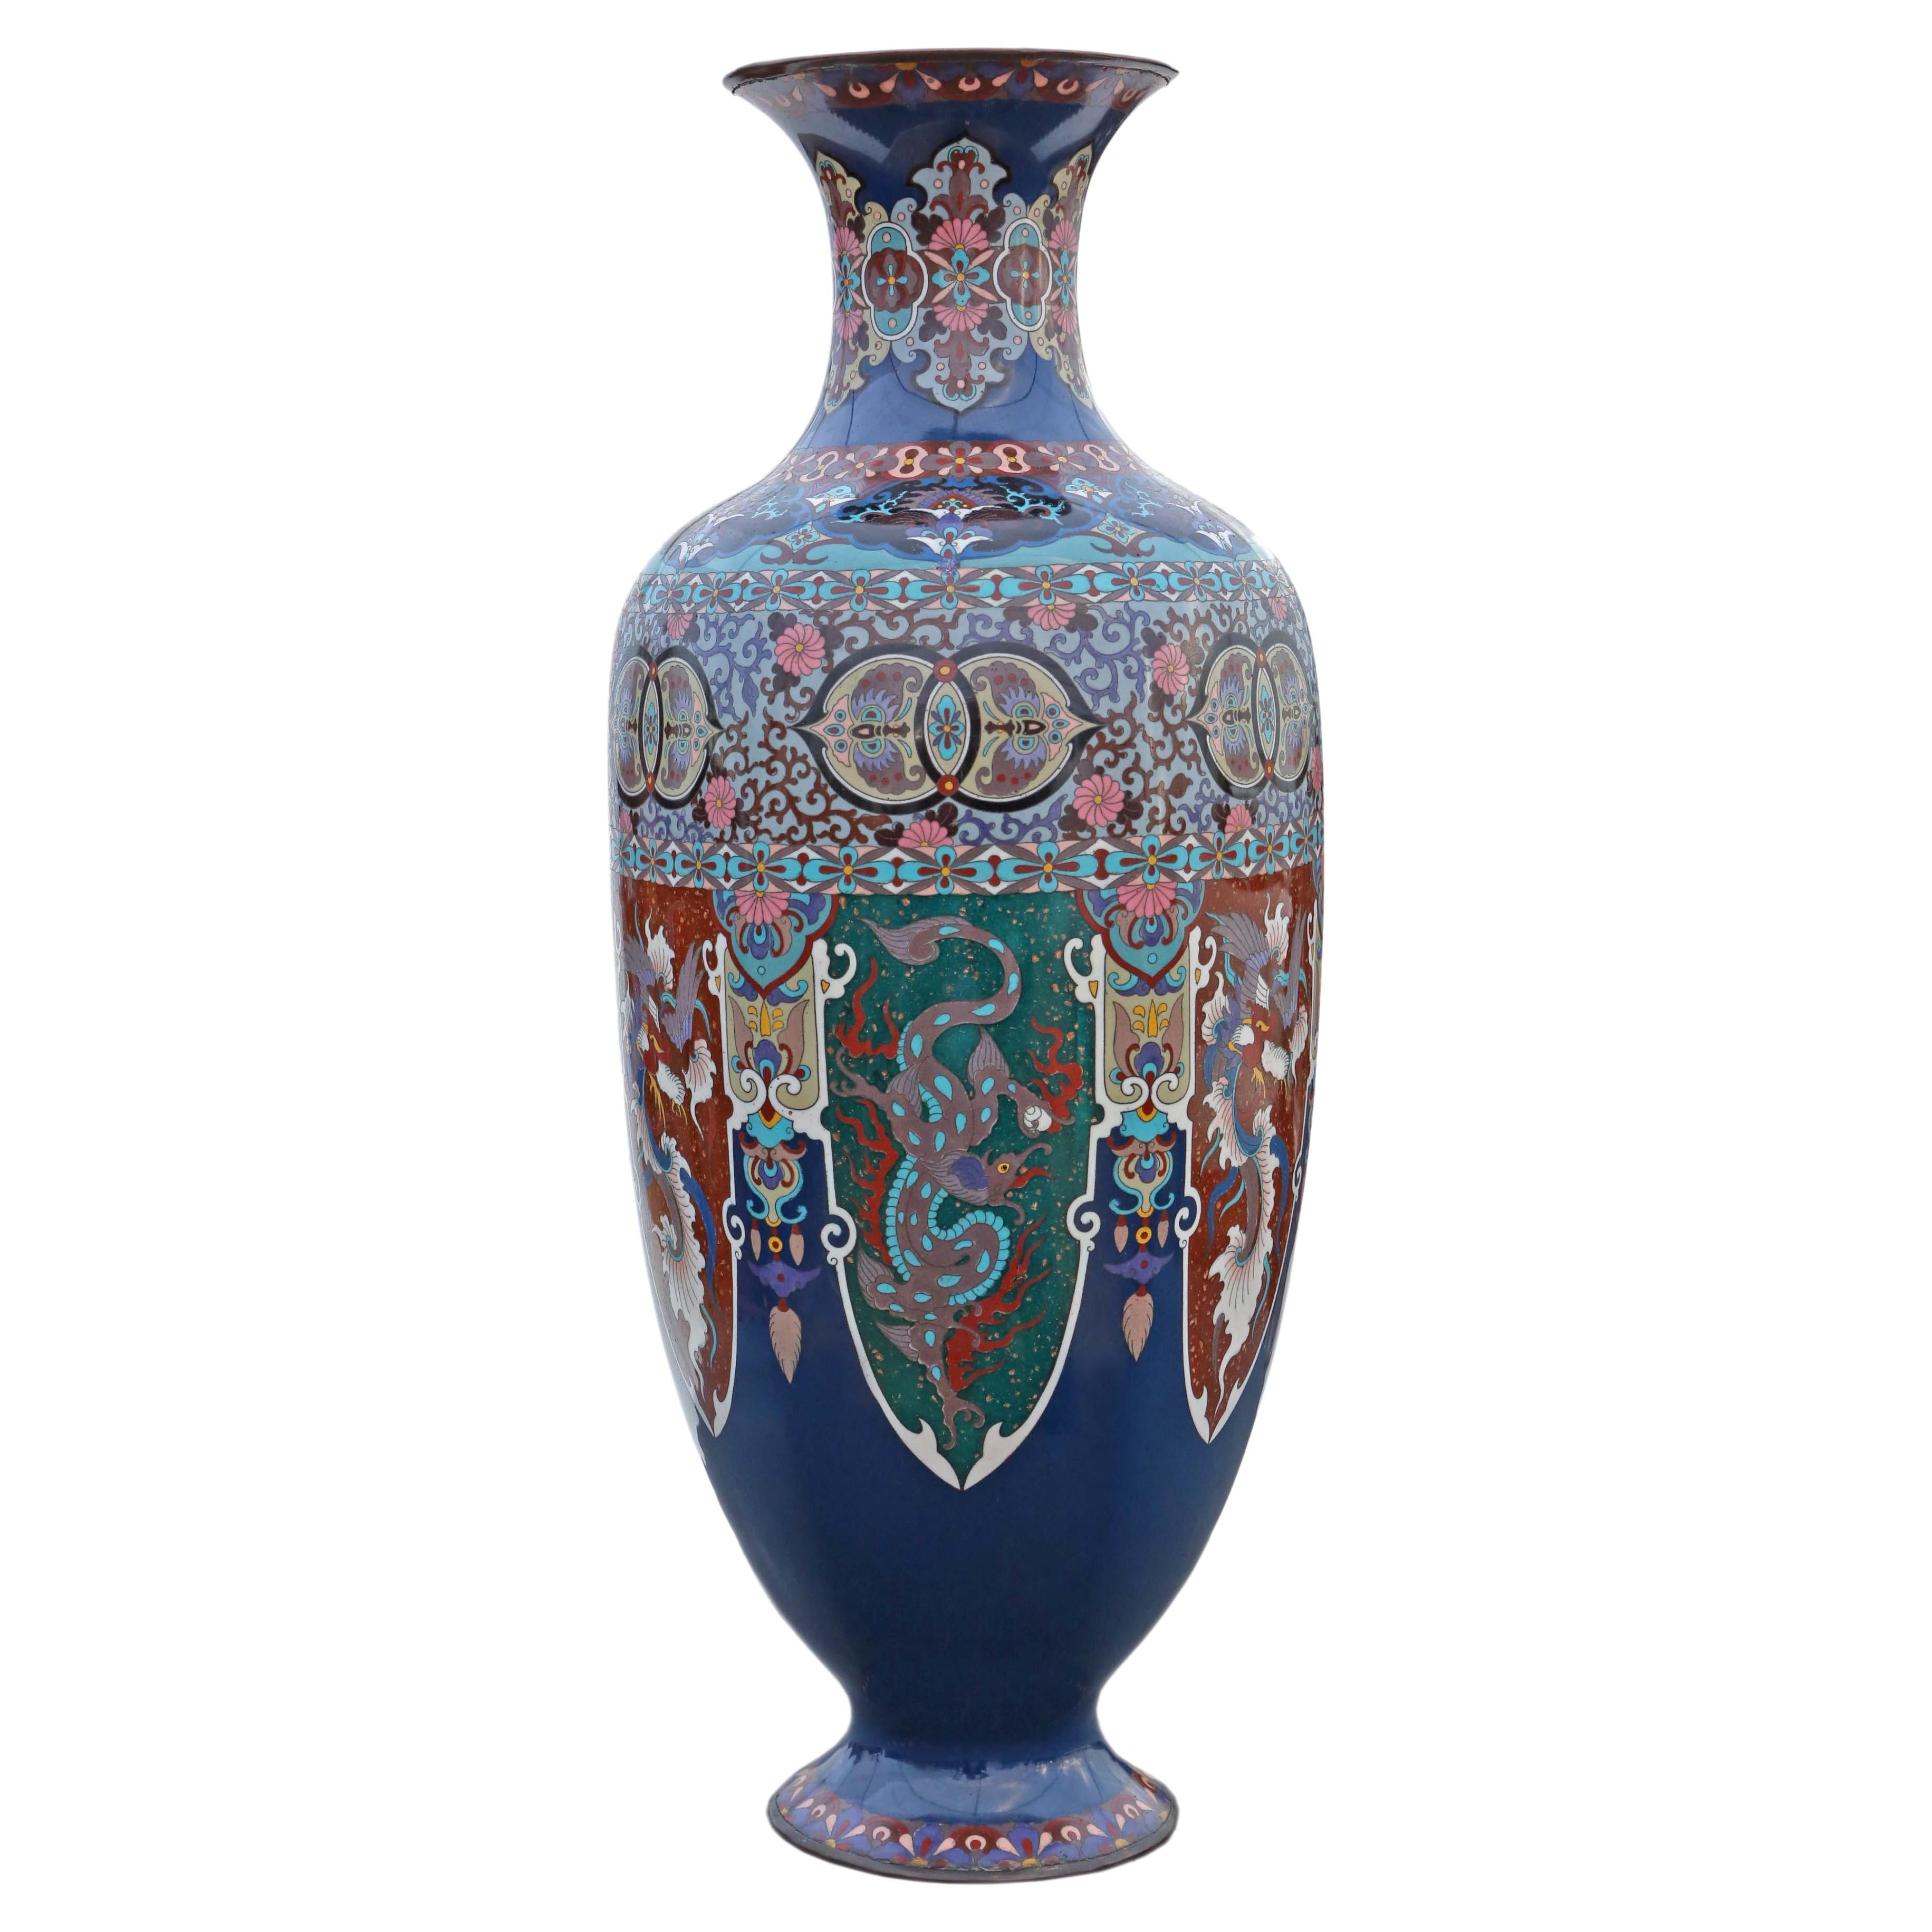 Große japanische Cloisonné-Vase aus dem 19. Jahrhundert, 24 Zoll, antikes orientalisches Dekor